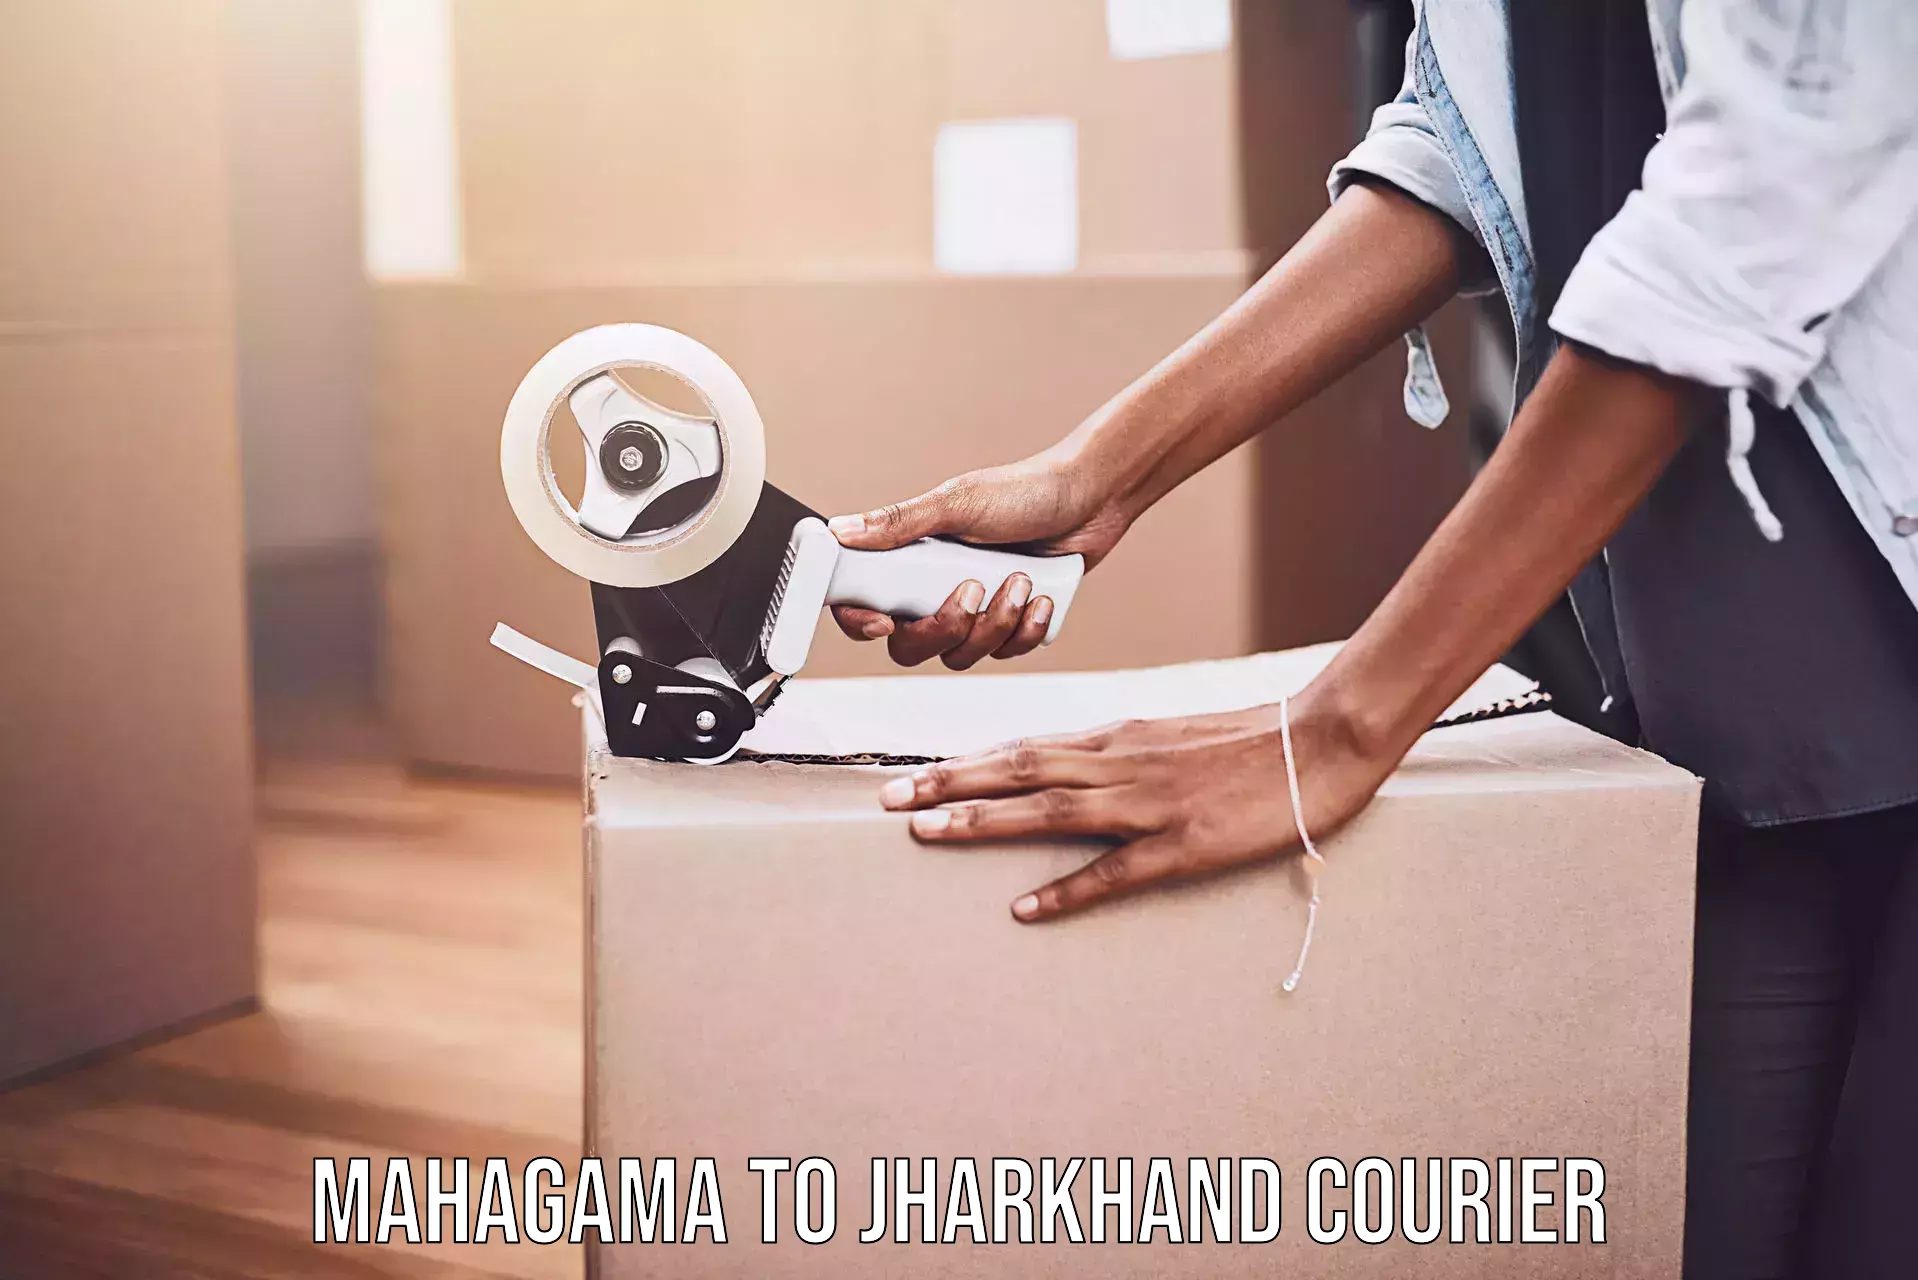 Speedy delivery service Mahagama to Jharkhand